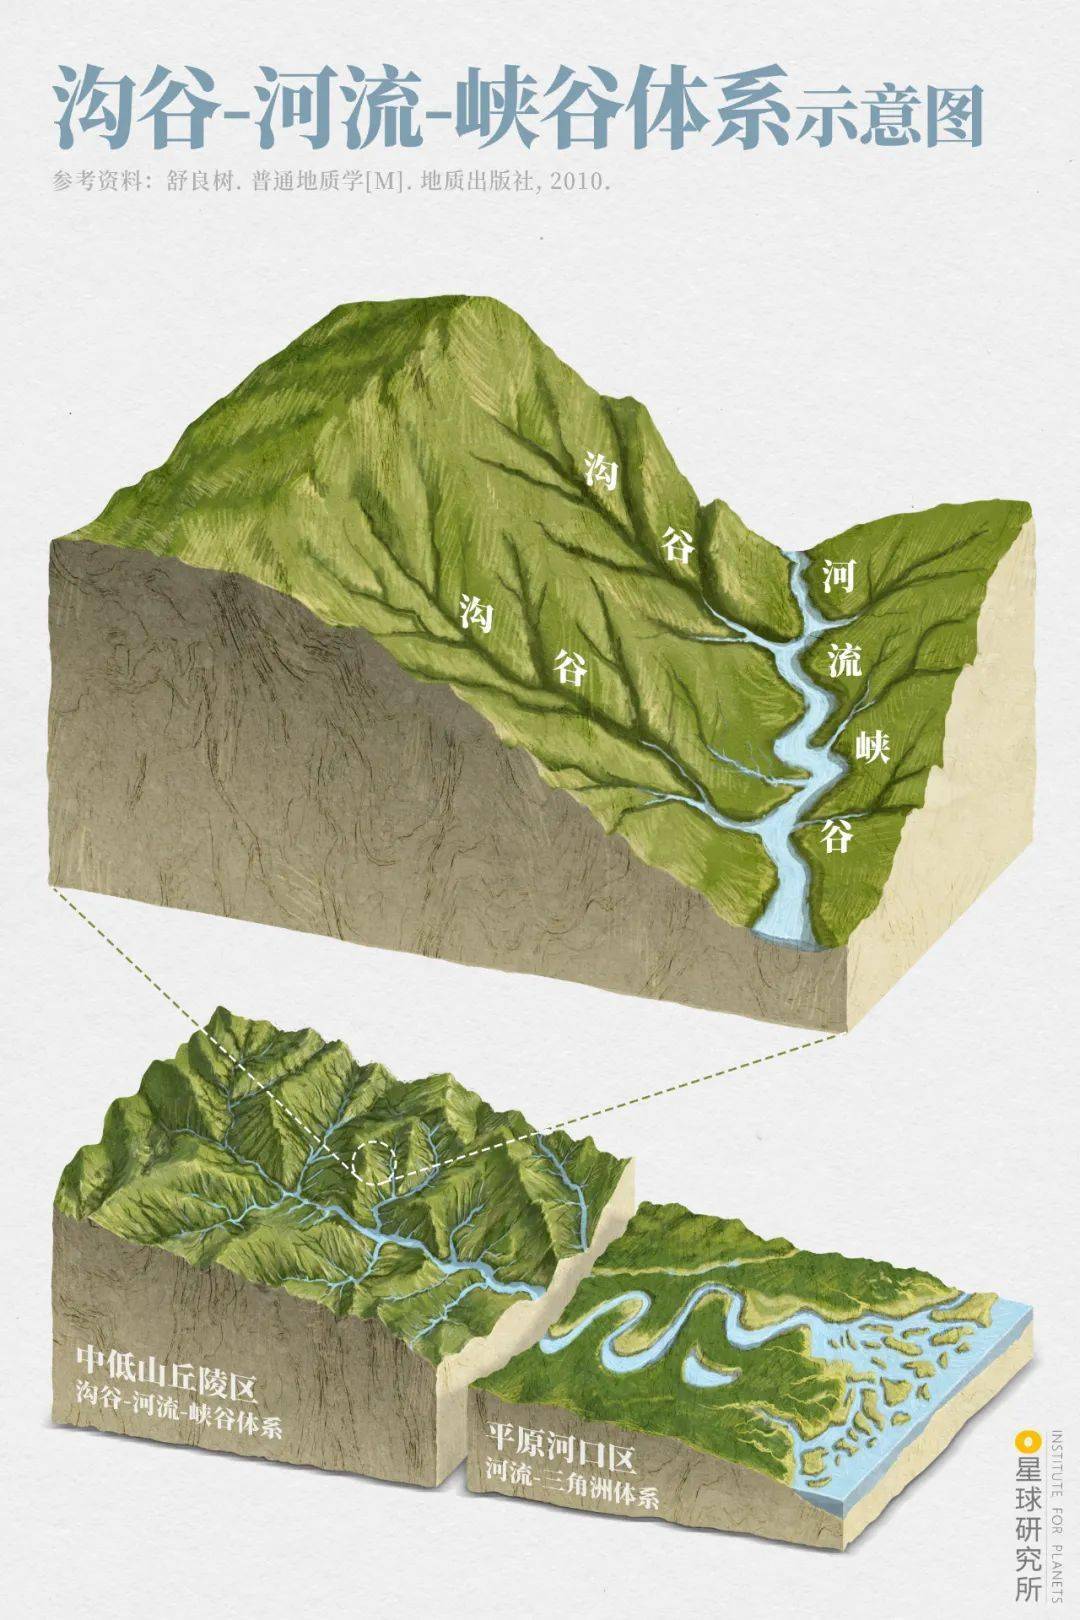 出现在大地上 引导江河百川通向大海(沟谷-河流-峡谷体系示意图,制图